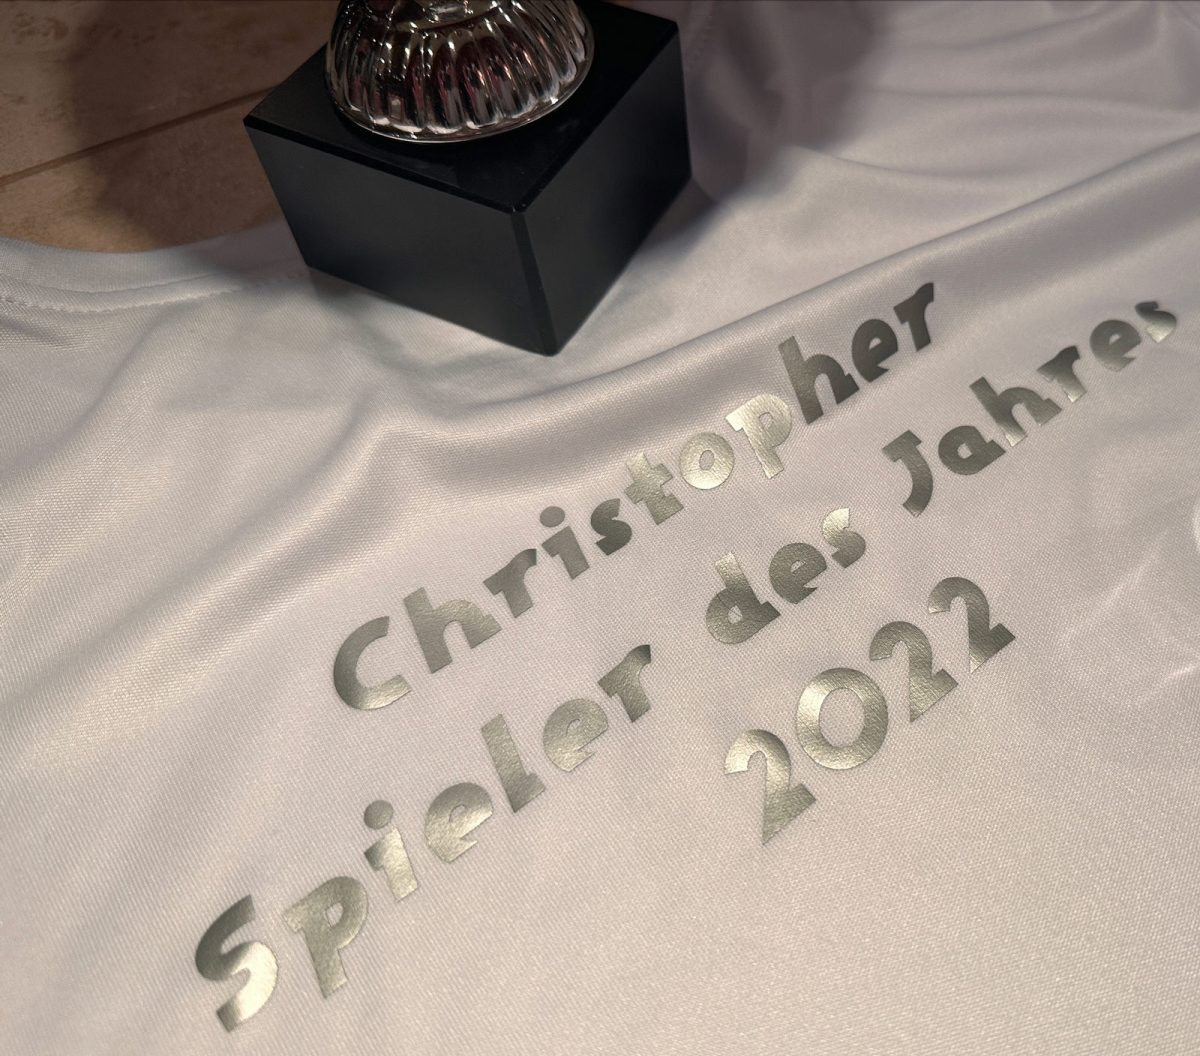 Als Spieler des Jahres 2022 wurde Christopher Pfohe gewählt